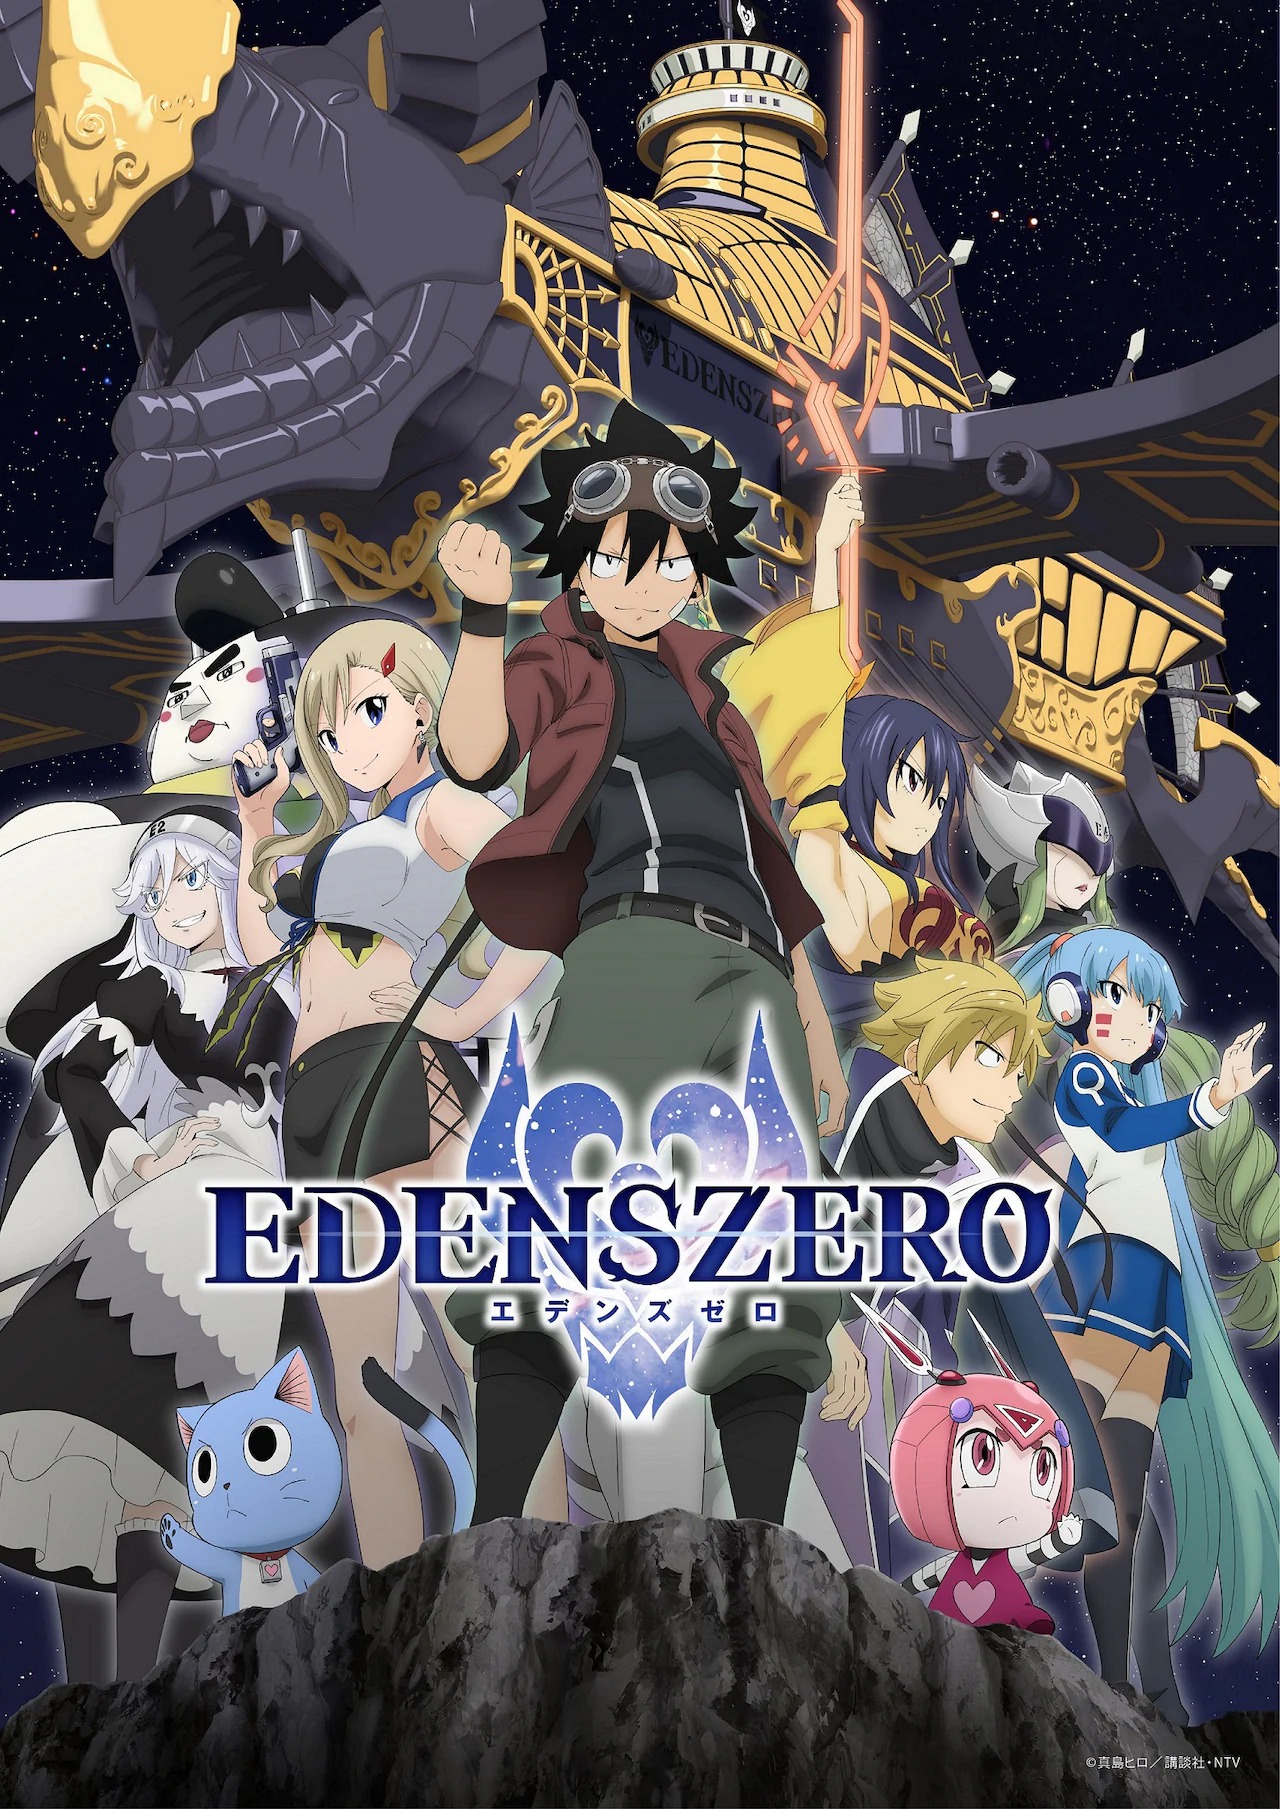 Edens Zero - Novos dubladores anunciados e visual revelado - AnimeNew